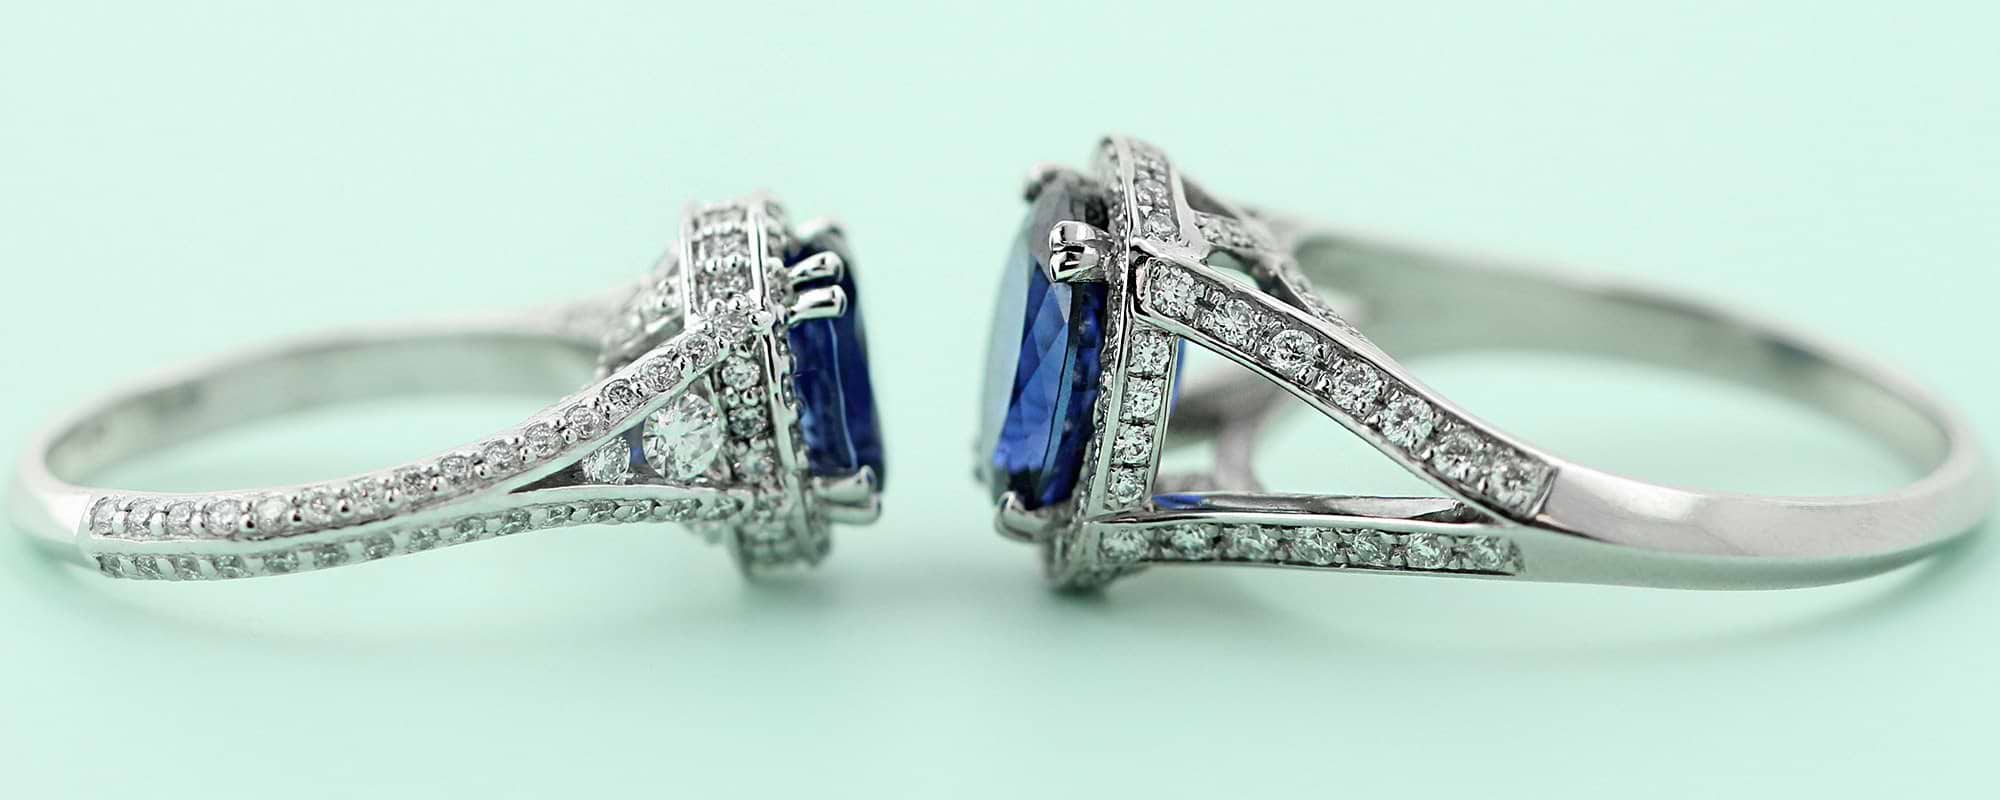 Antique Blue Sapphire Engagement Rings